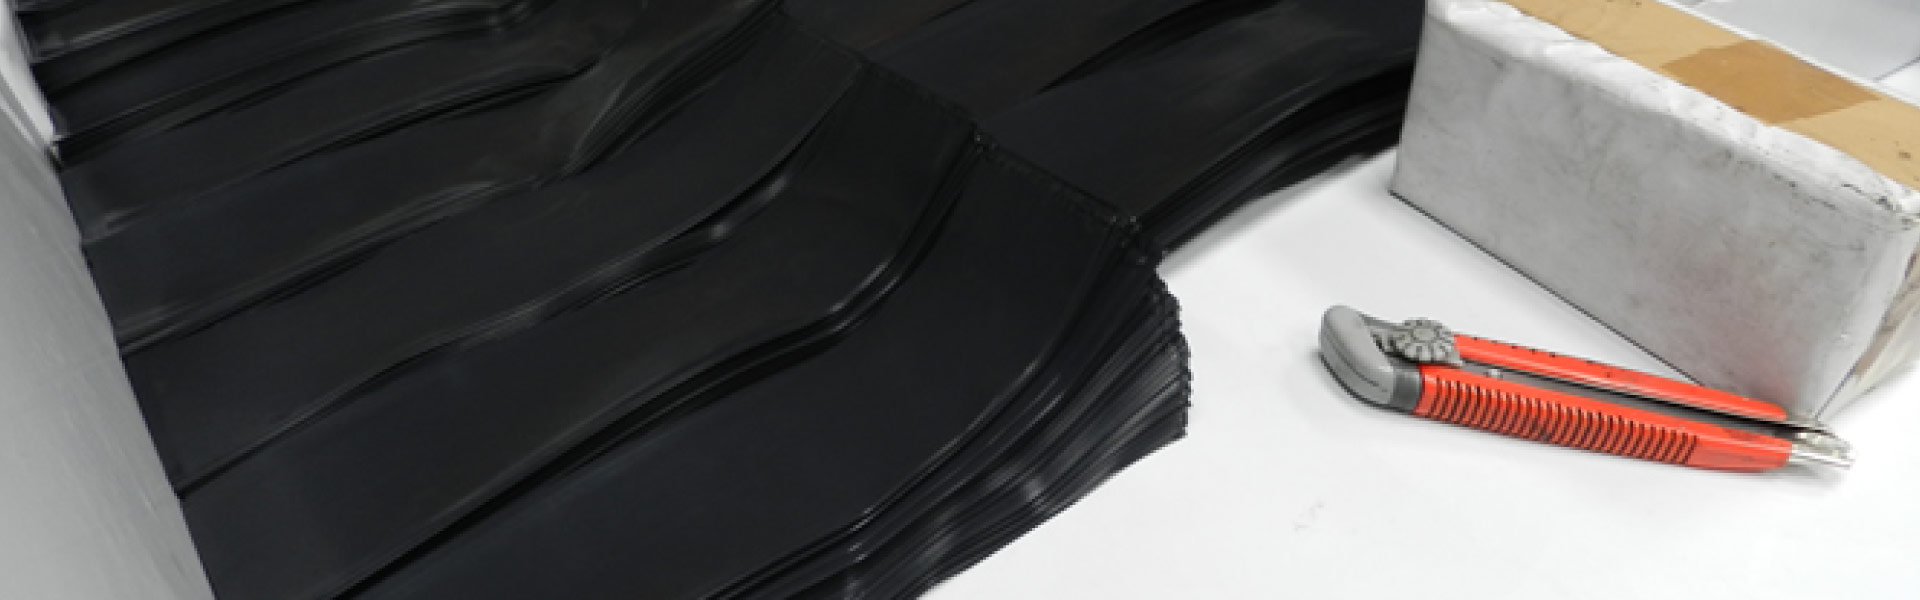 Indurstrias Enflex S.A. - Fabrica de Bolsas y Mangas Plásticas – Biodegradables – Compostables